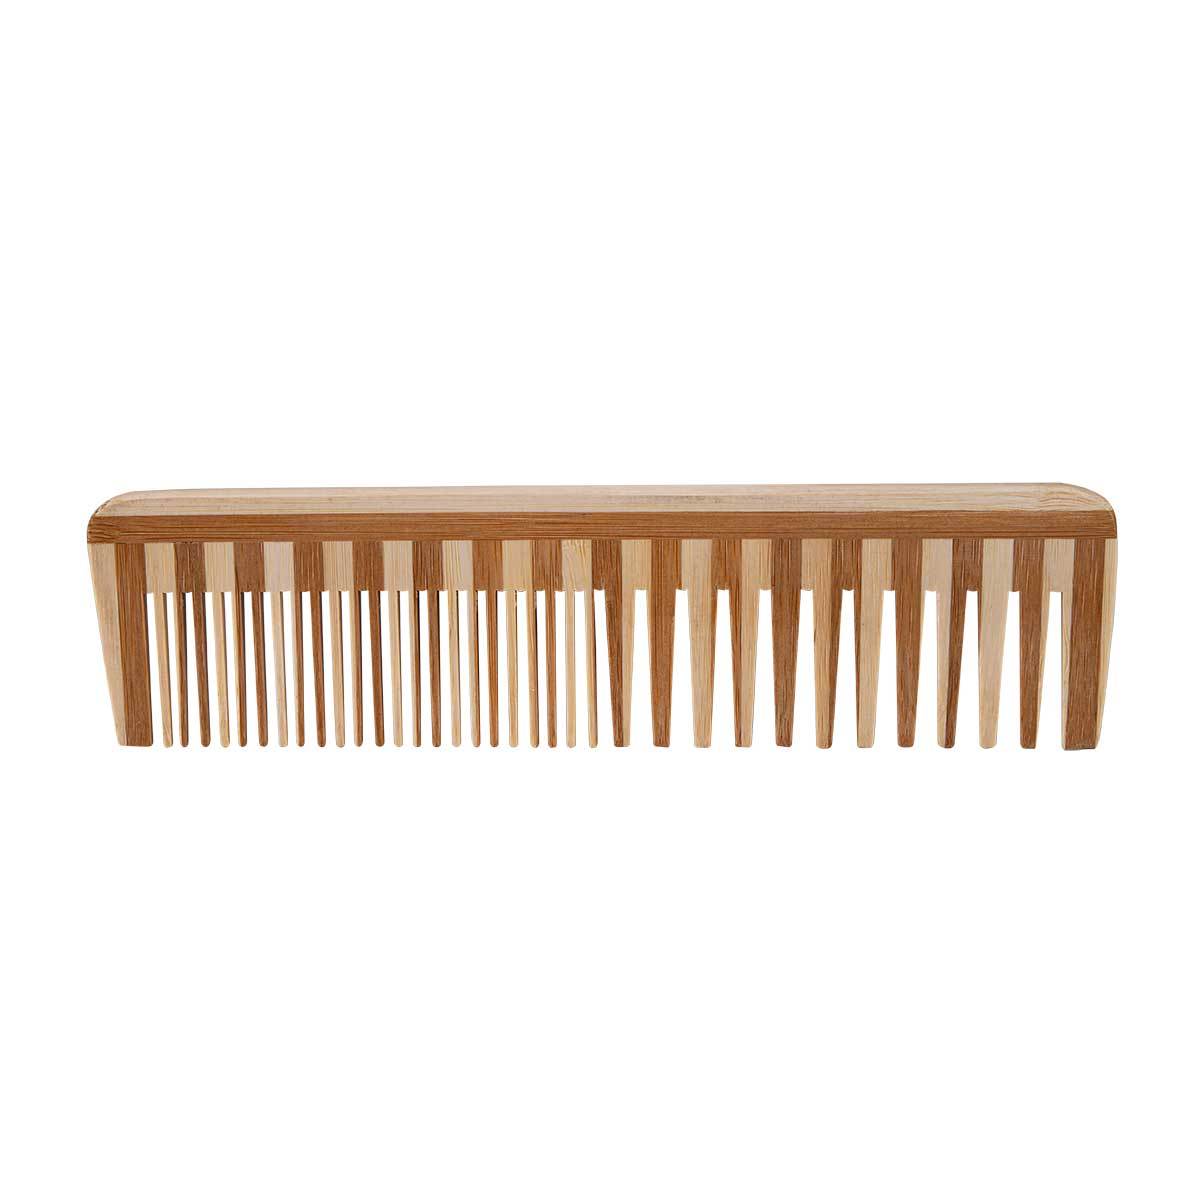 Relaxus Beauty Bamboo Detangler Comb